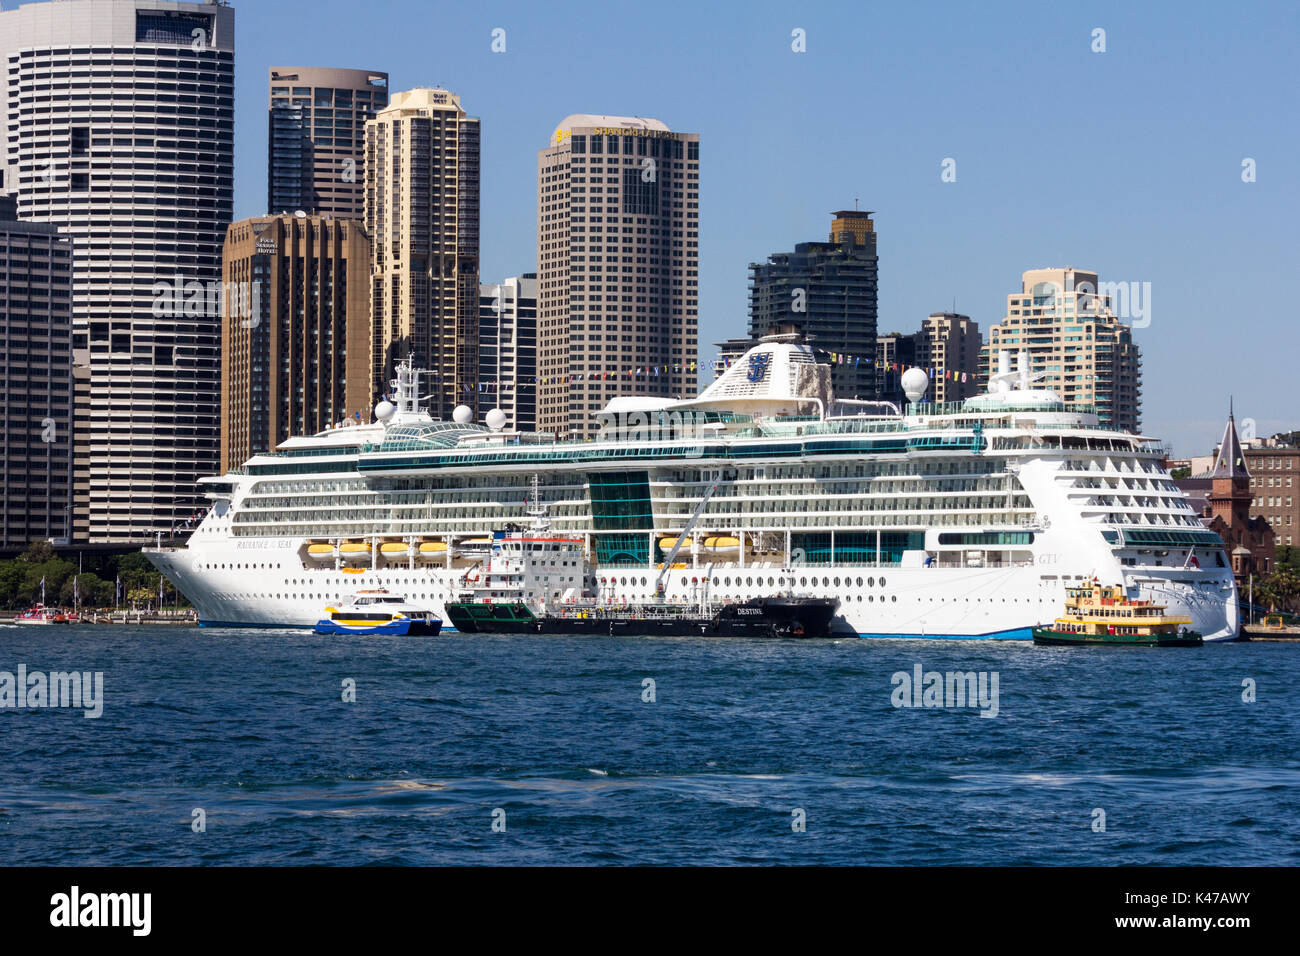 Il Royal Carribean International nave da crociera splendore dei mari ormeggiata nel porto di Sydney, NSW, Nuovo Galles del Sud, Australia Foto Stock